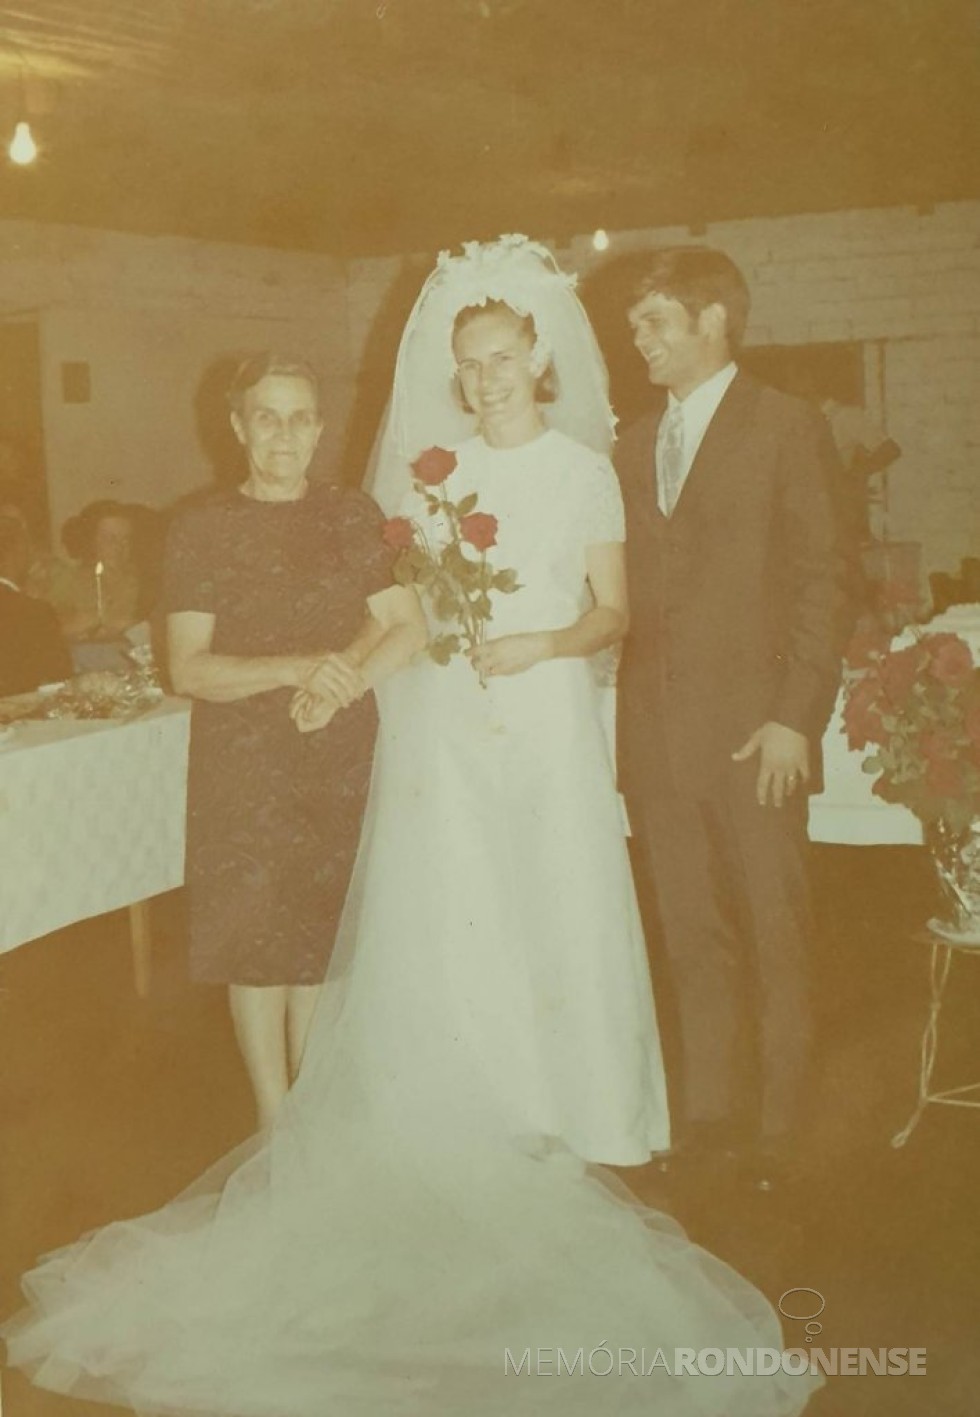 || Noivos Helena Koniecziniak e Heitor Danilo Brenner que casaram-se em fevereiro de 1971, na companhia da avó da noiva, senhora Helena Schmitz, proprietária do memorável 